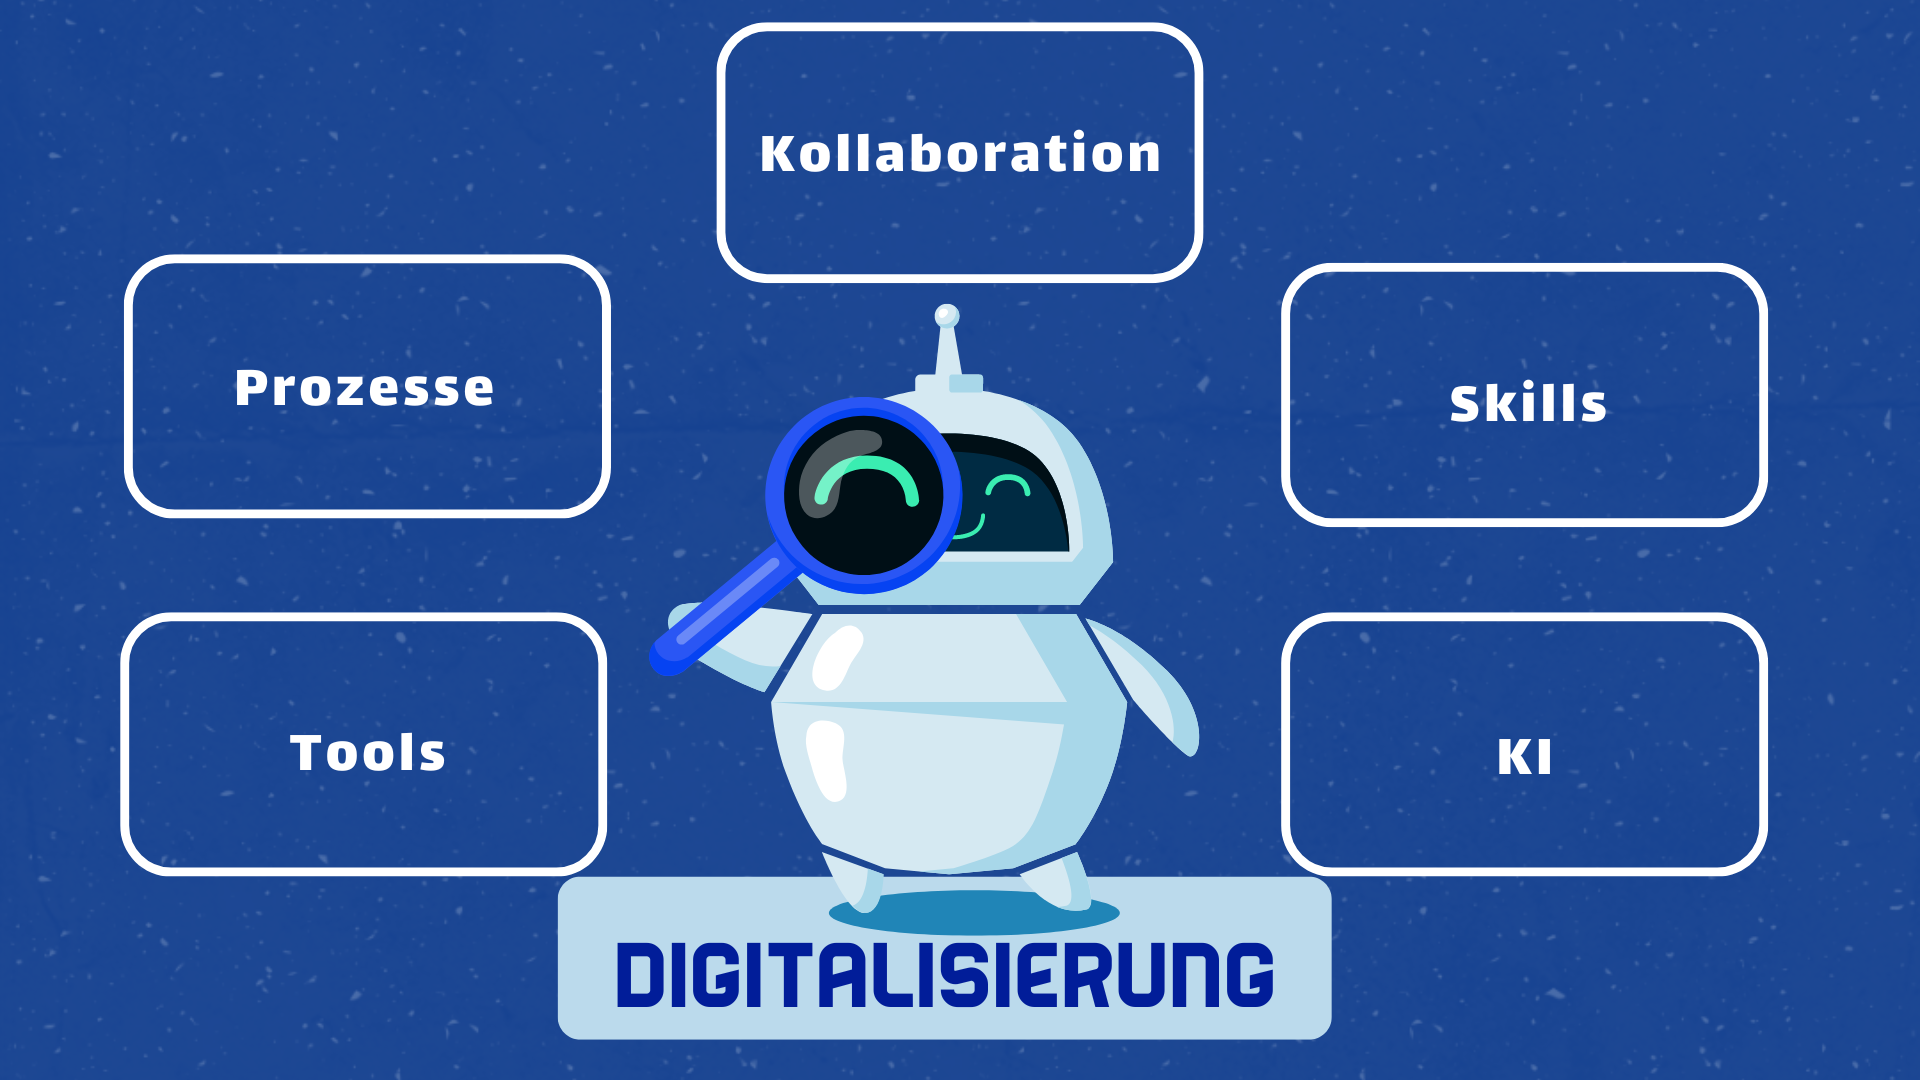 Die Abbildung vermittelt zentrale Aspekte der Digitalisierung, die in fünf Bereiche unterteilt sind: Prozesse, Kollaboration, Skills, Tools und KI (Künstliche Intelligenz).